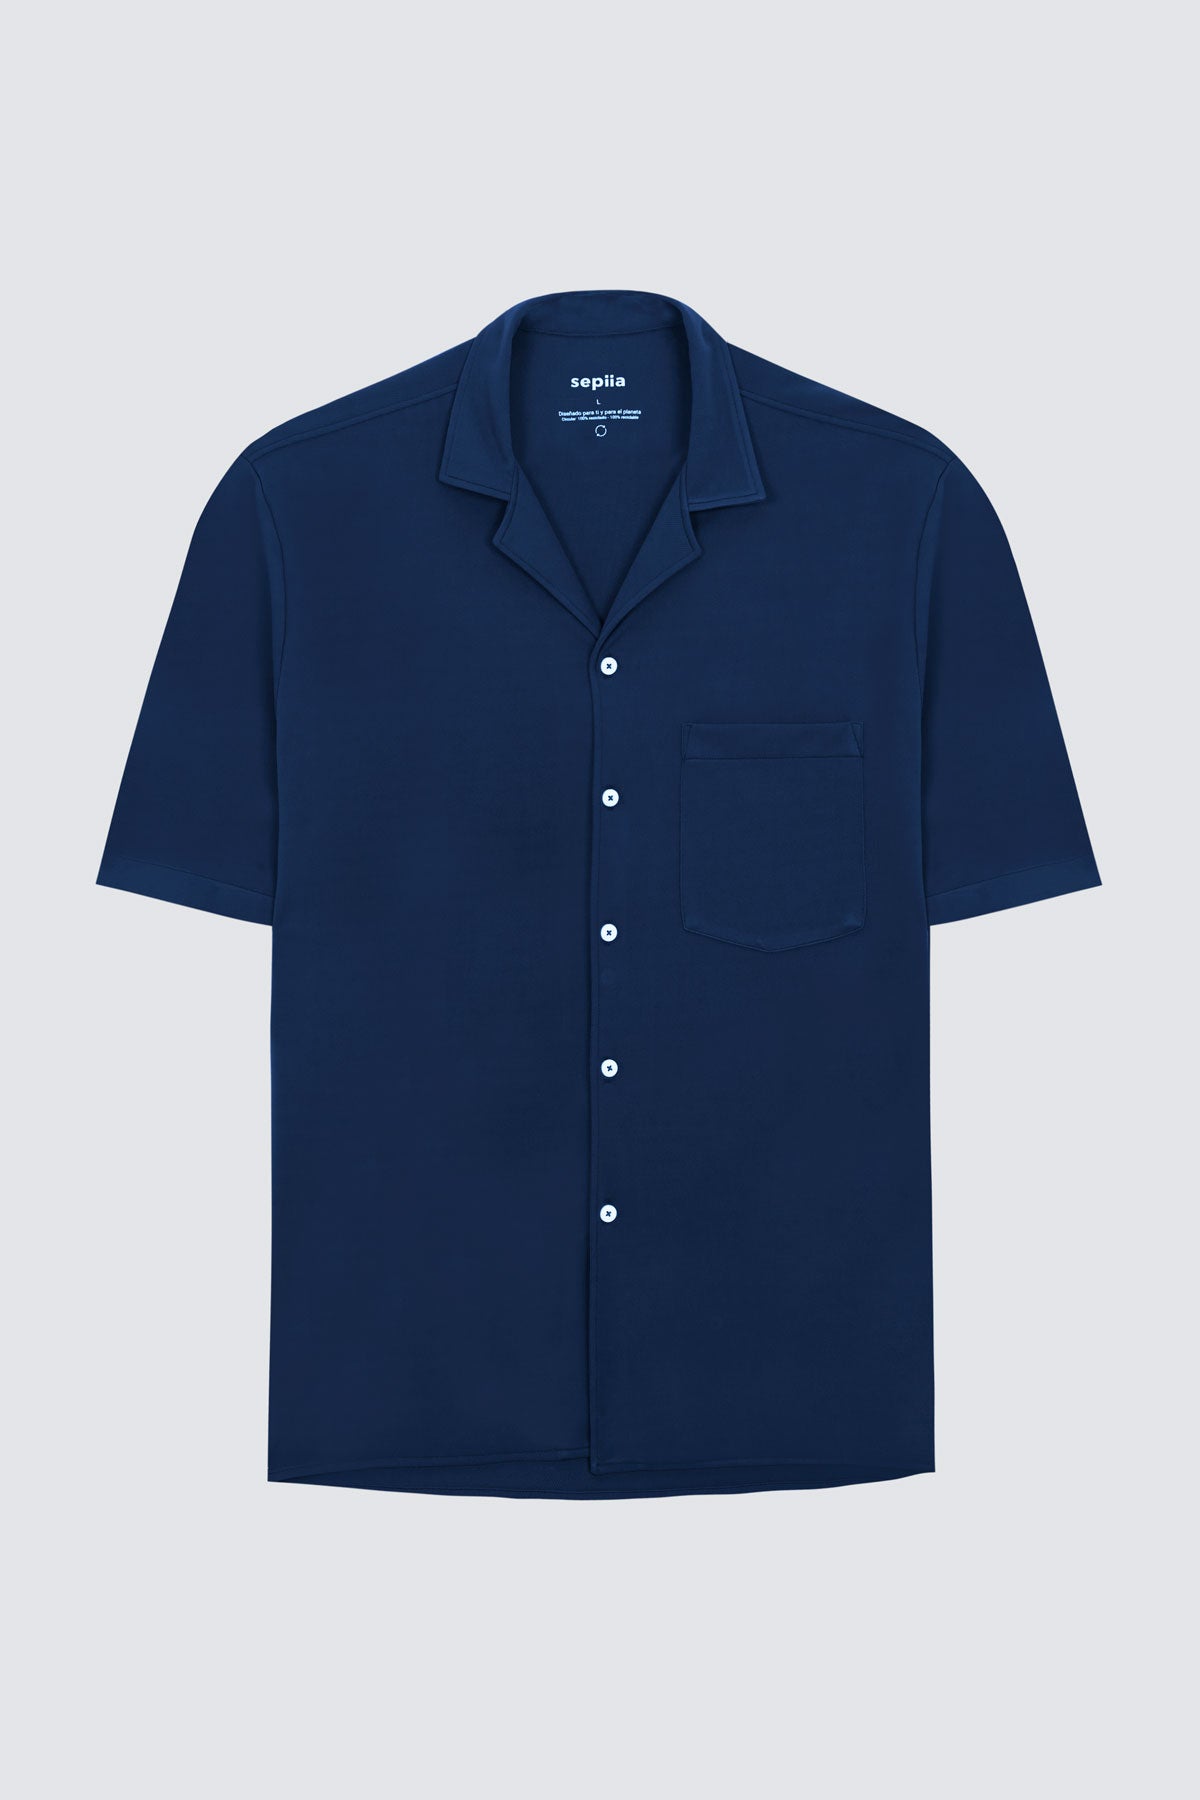 Camisa manga corta azul zafiro de Sepiia, fresca y elegante, perfecta para el verano. Foto prenda en plano